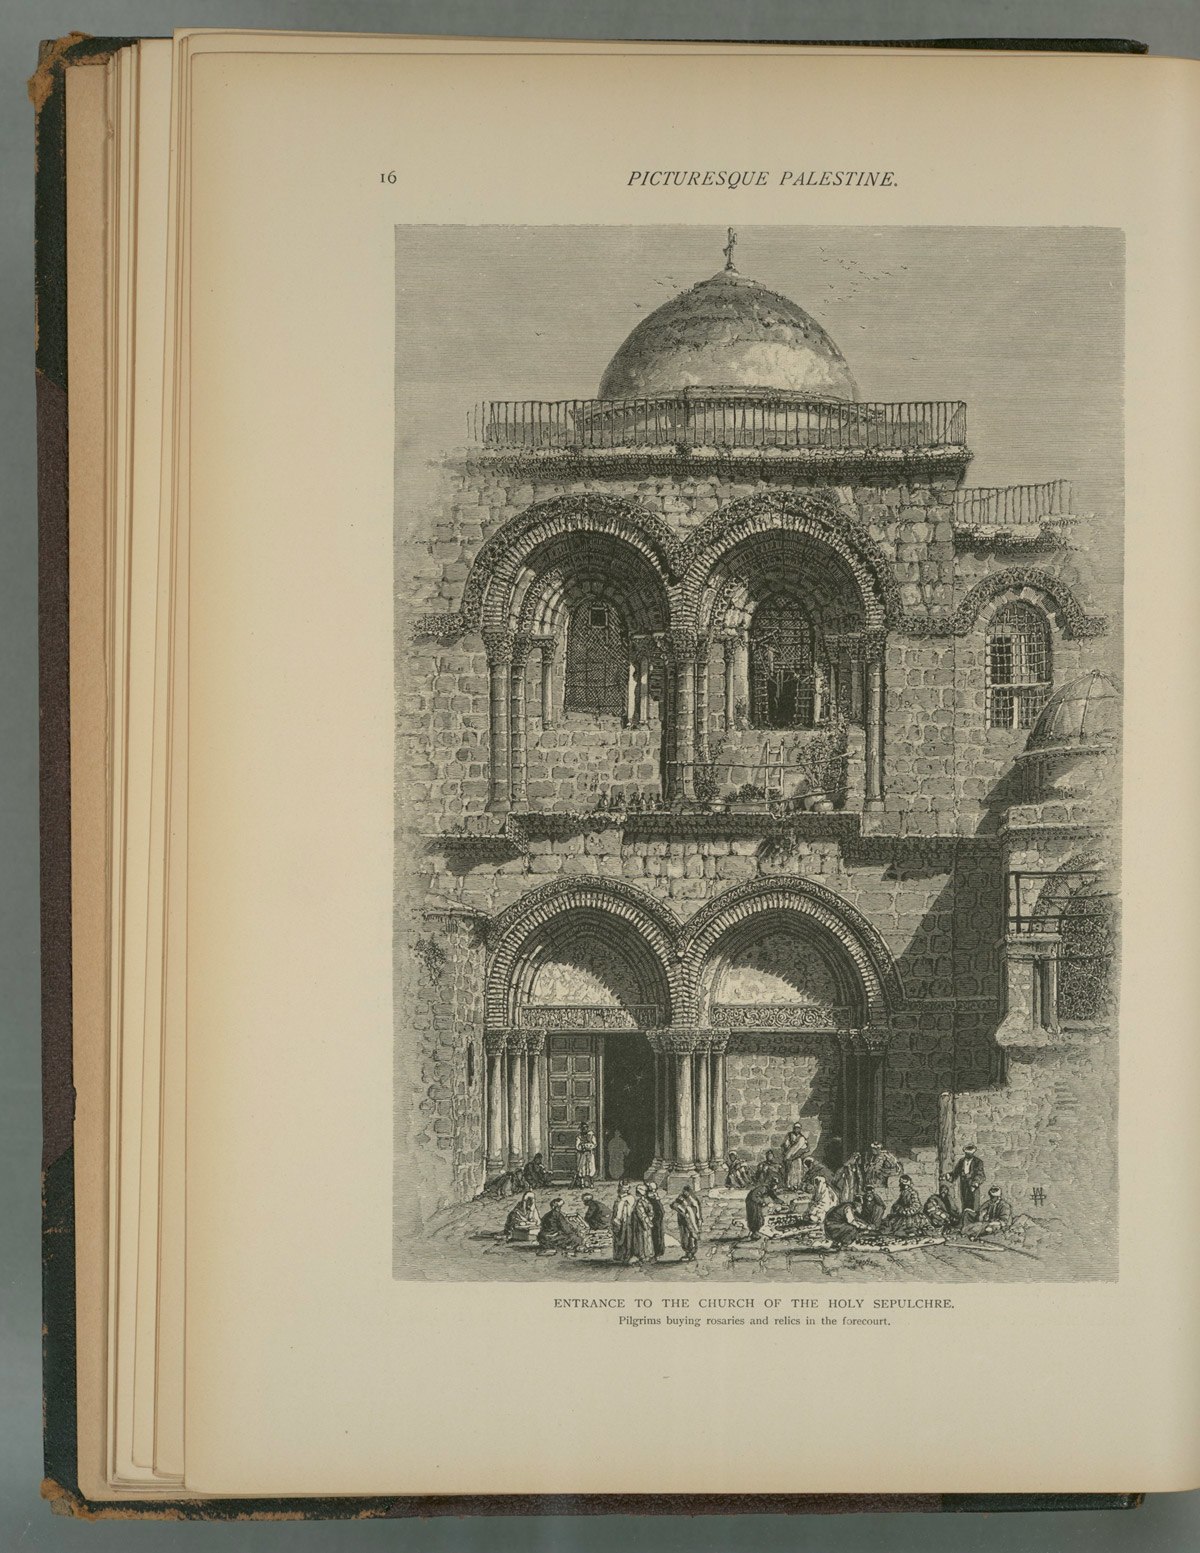 يظهر هذا السلم في رسمٍ للكنيسة يعود إلى ثمانينات القرن التاسع عشر - صورة: New York Public Library